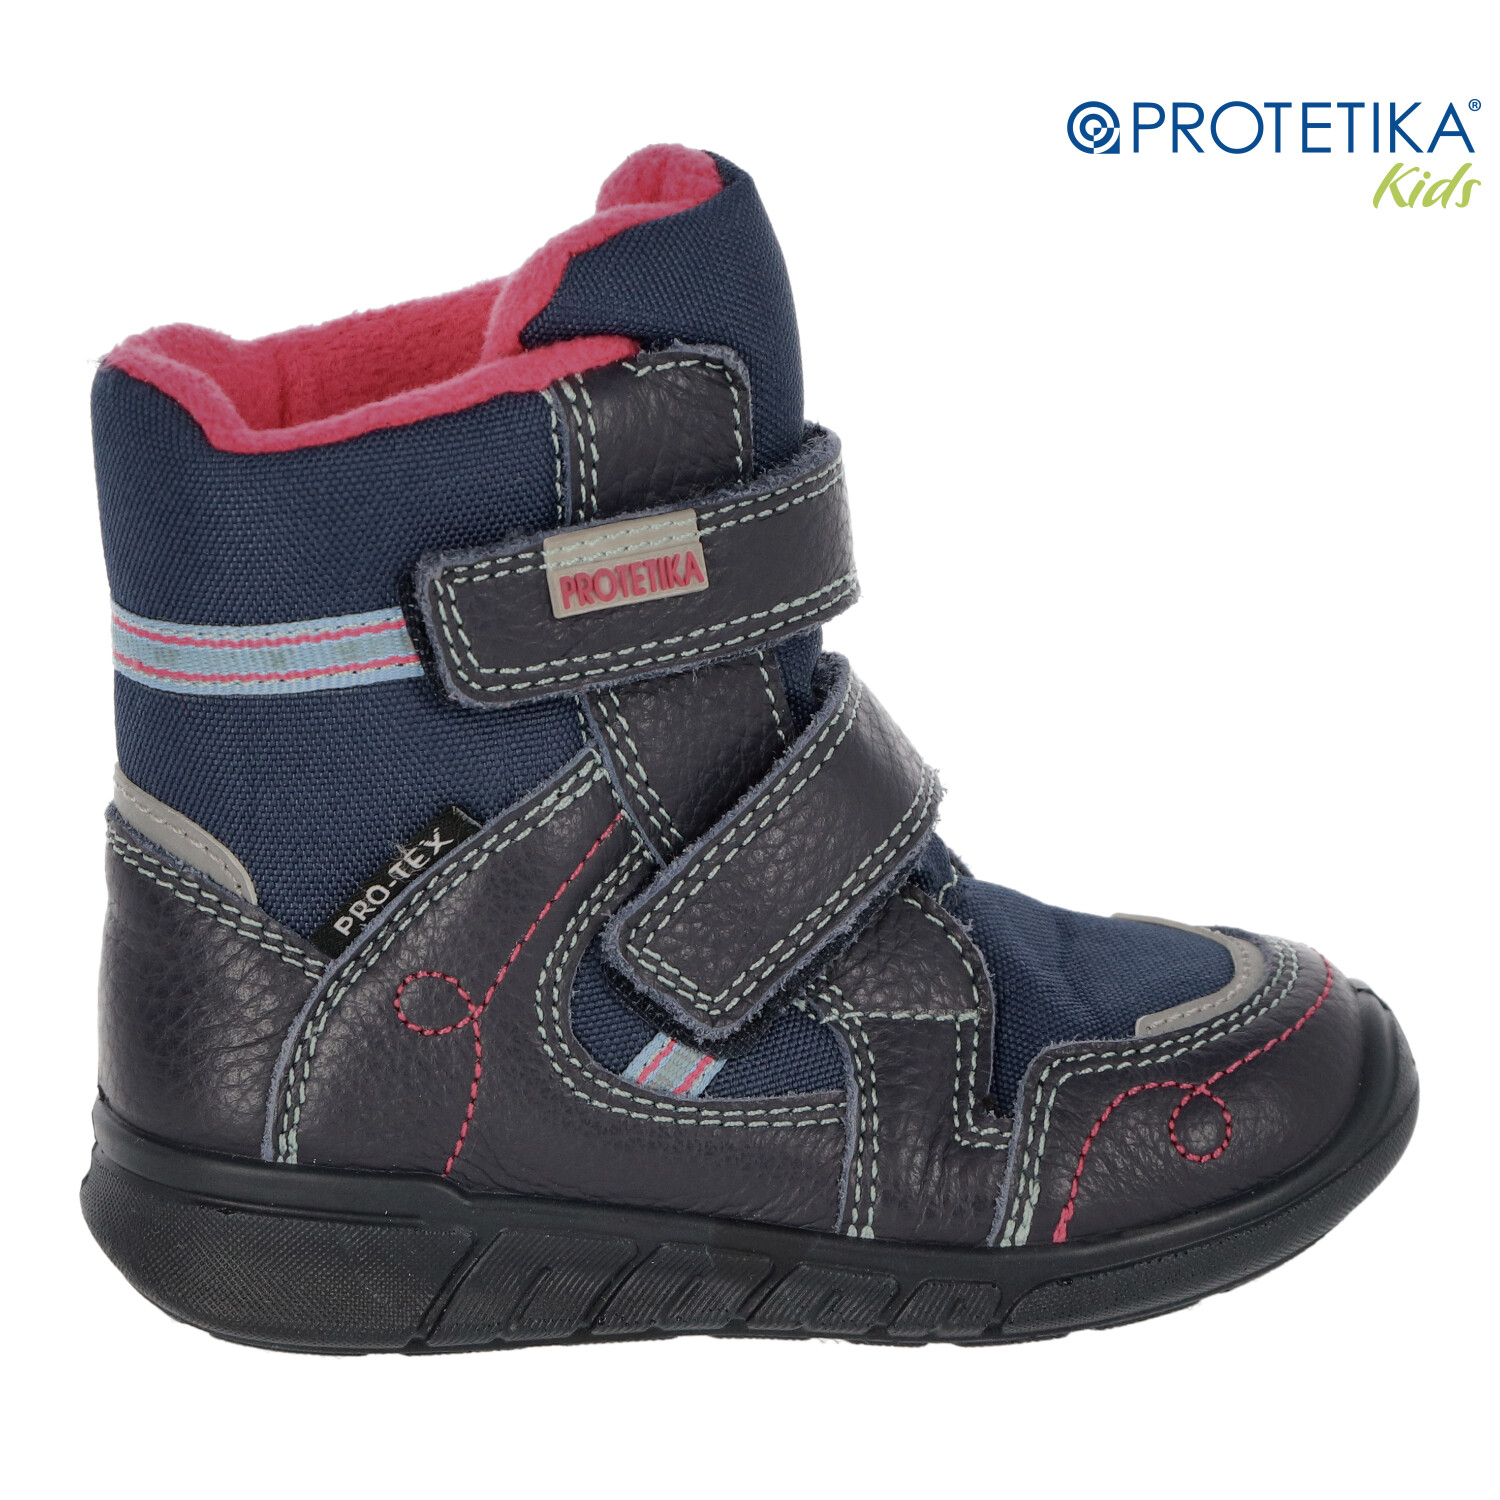 Protetika - zimné topánky s membránou PRO-tex DENERIS navy - zateplené